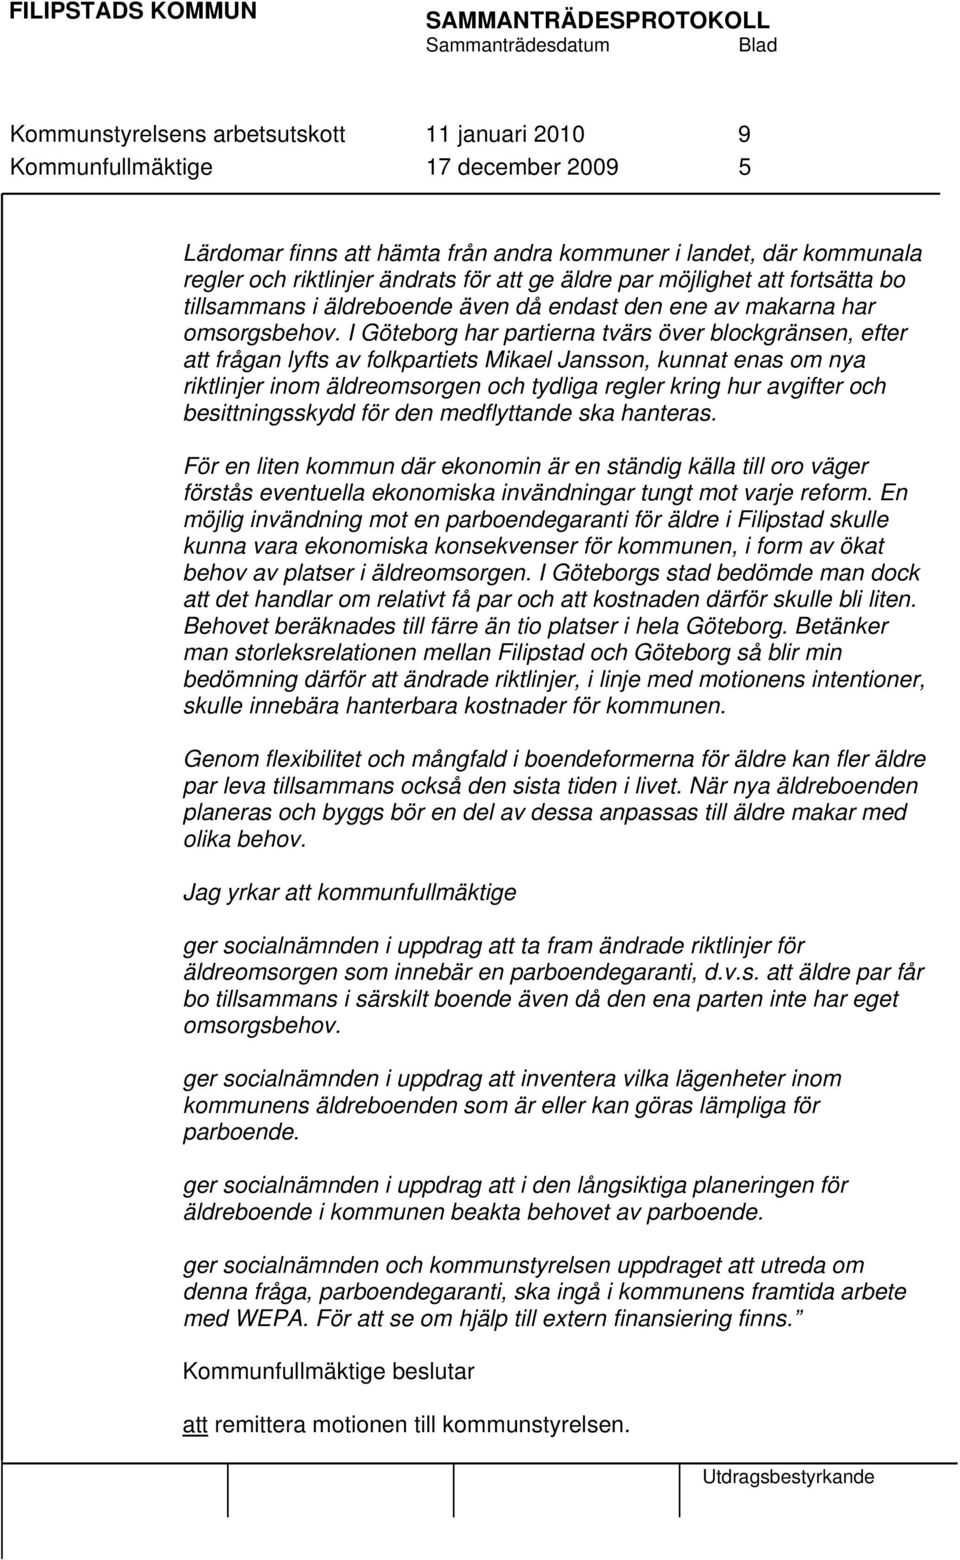 I Göteborg har partierna tvärs över blockgränsen, efter att frågan lyfts av folkpartiets Mikael Jansson, kunnat enas om nya riktlinjer inom äldreomsorgen och tydliga regler kring hur avgifter och